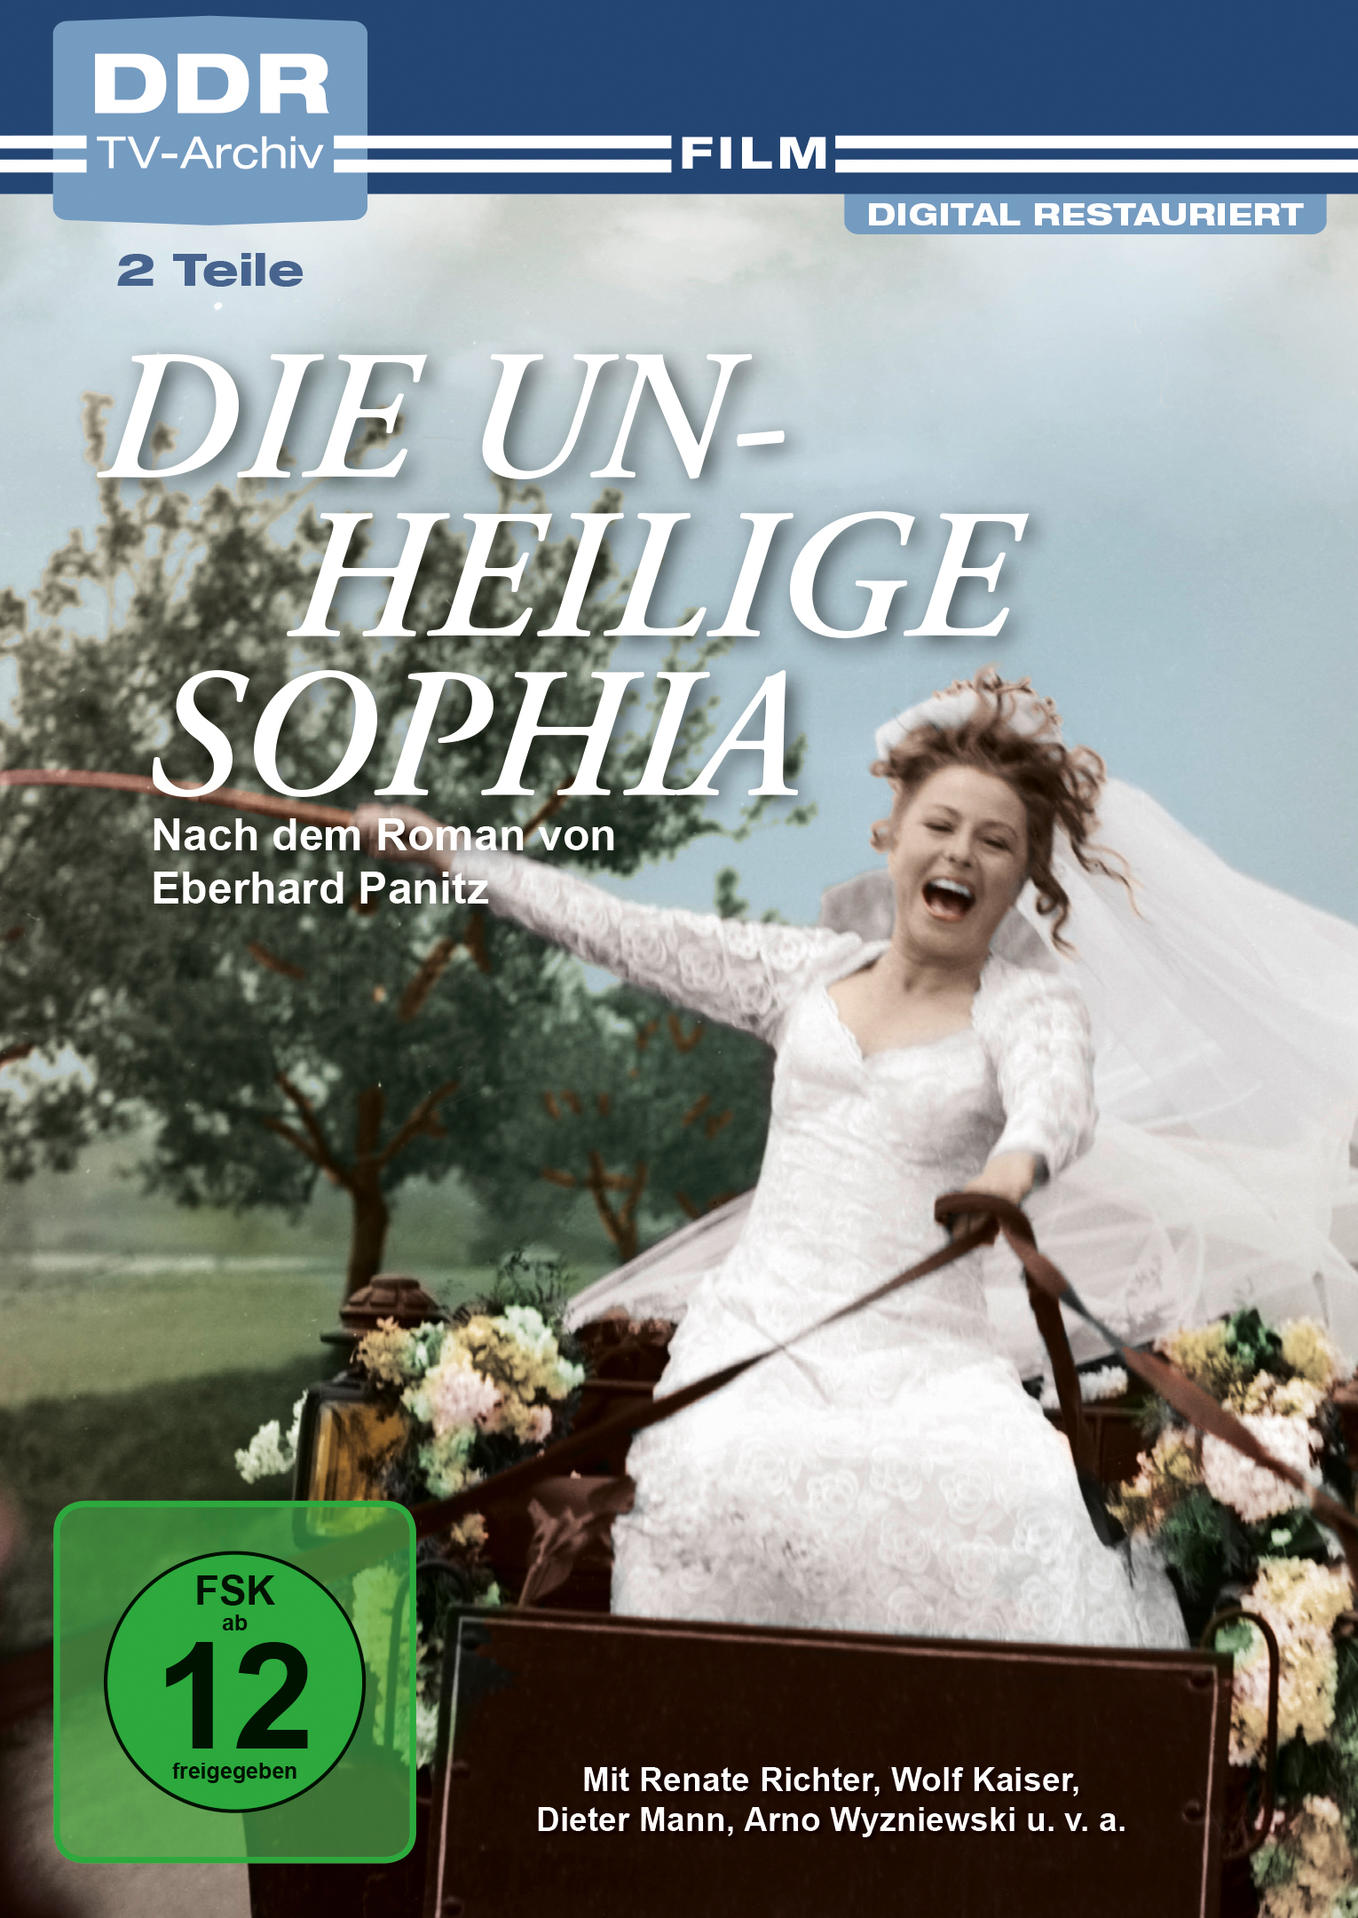 unheilige Sophia DVD Die